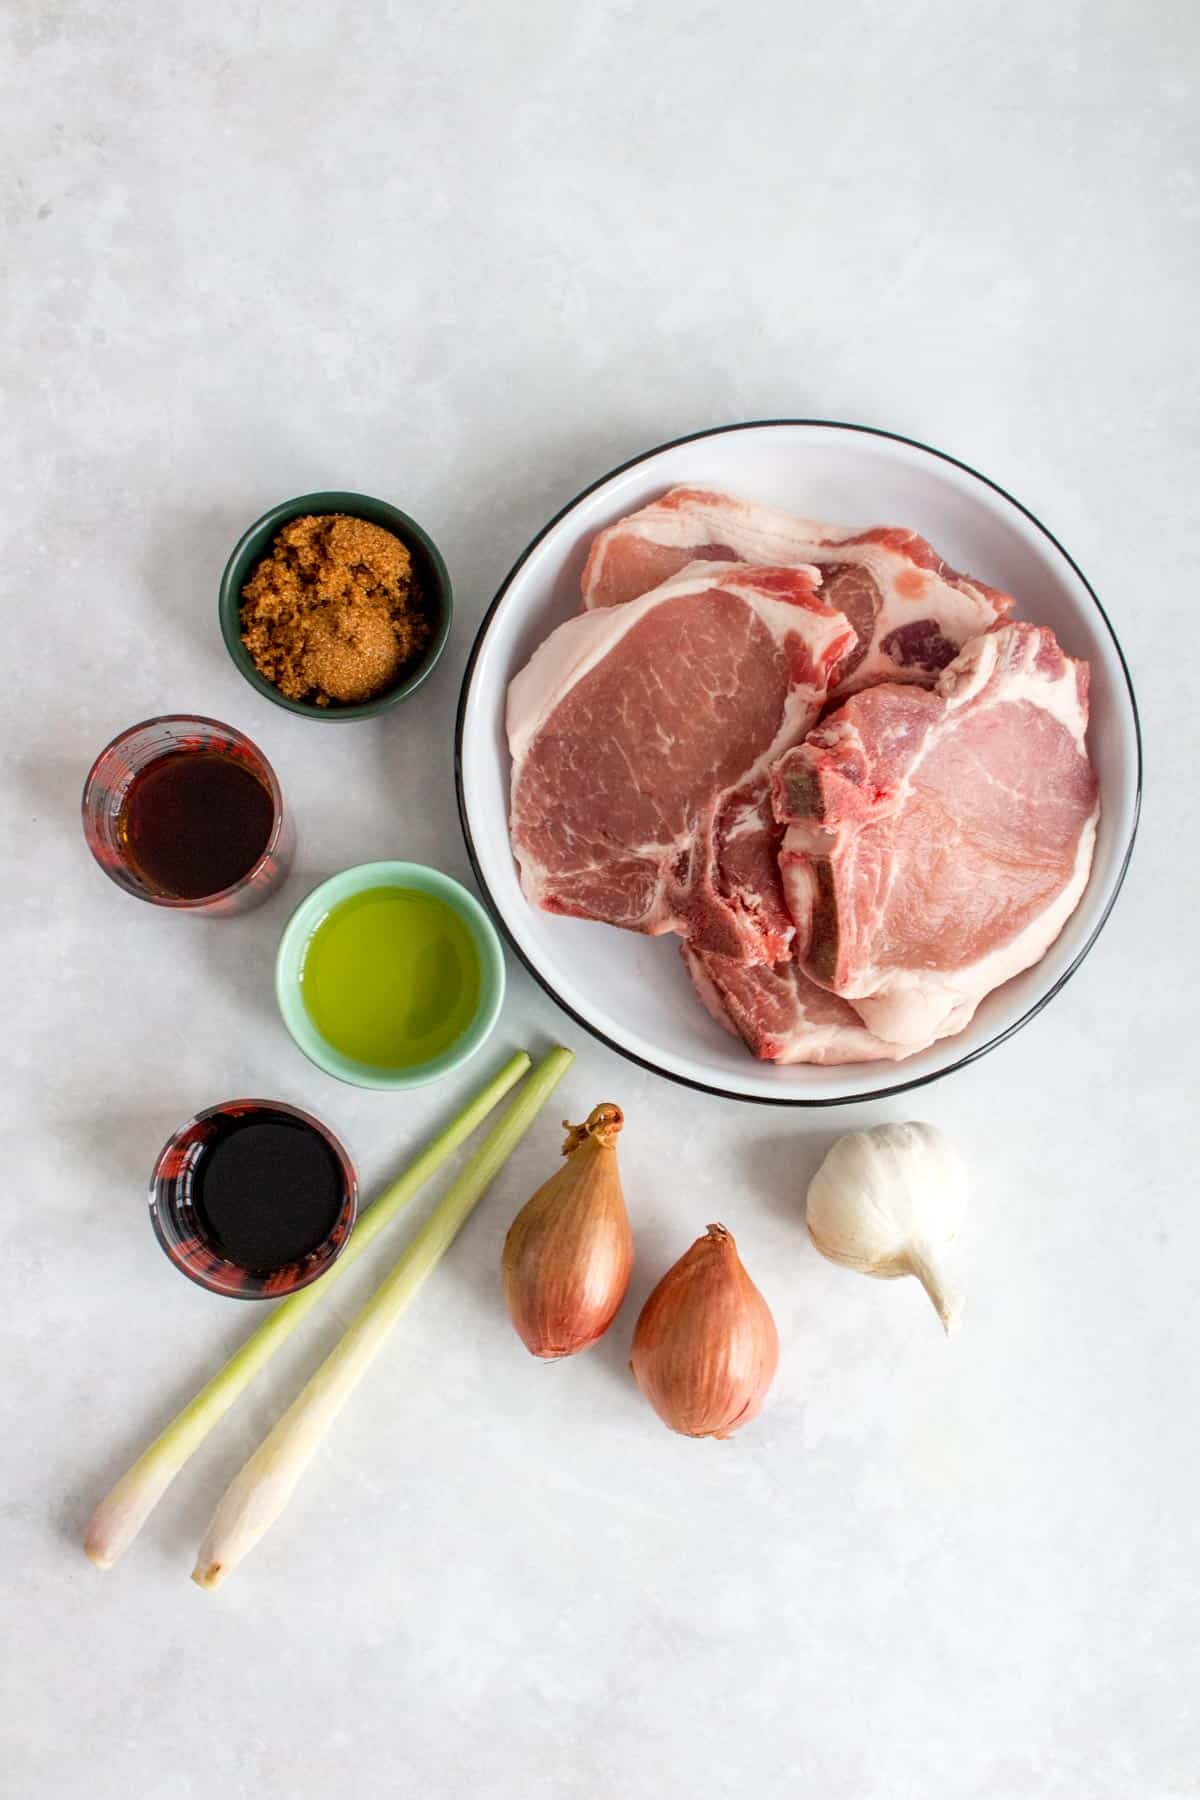 Ingredients needed to make Vietnamese pork chops.